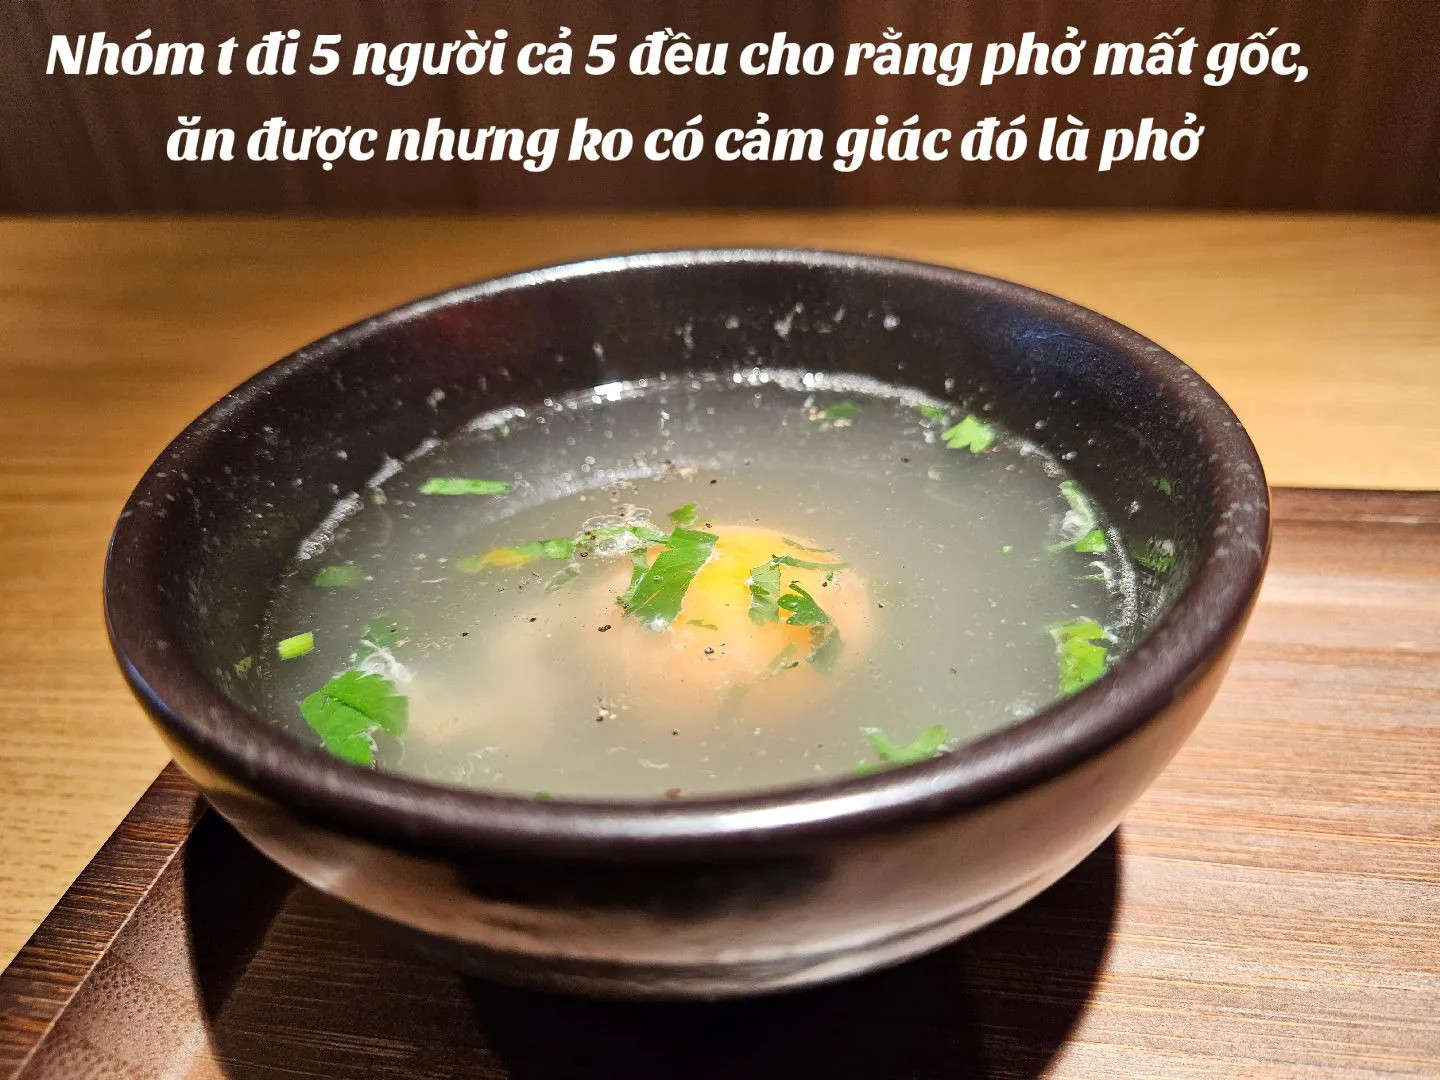 Quán phở mới Chi Pu người Việt ăn 10 người hết 9 người “chê mặn”, dân Trung Quốc tấm tắc khen ngon - ảnh 6